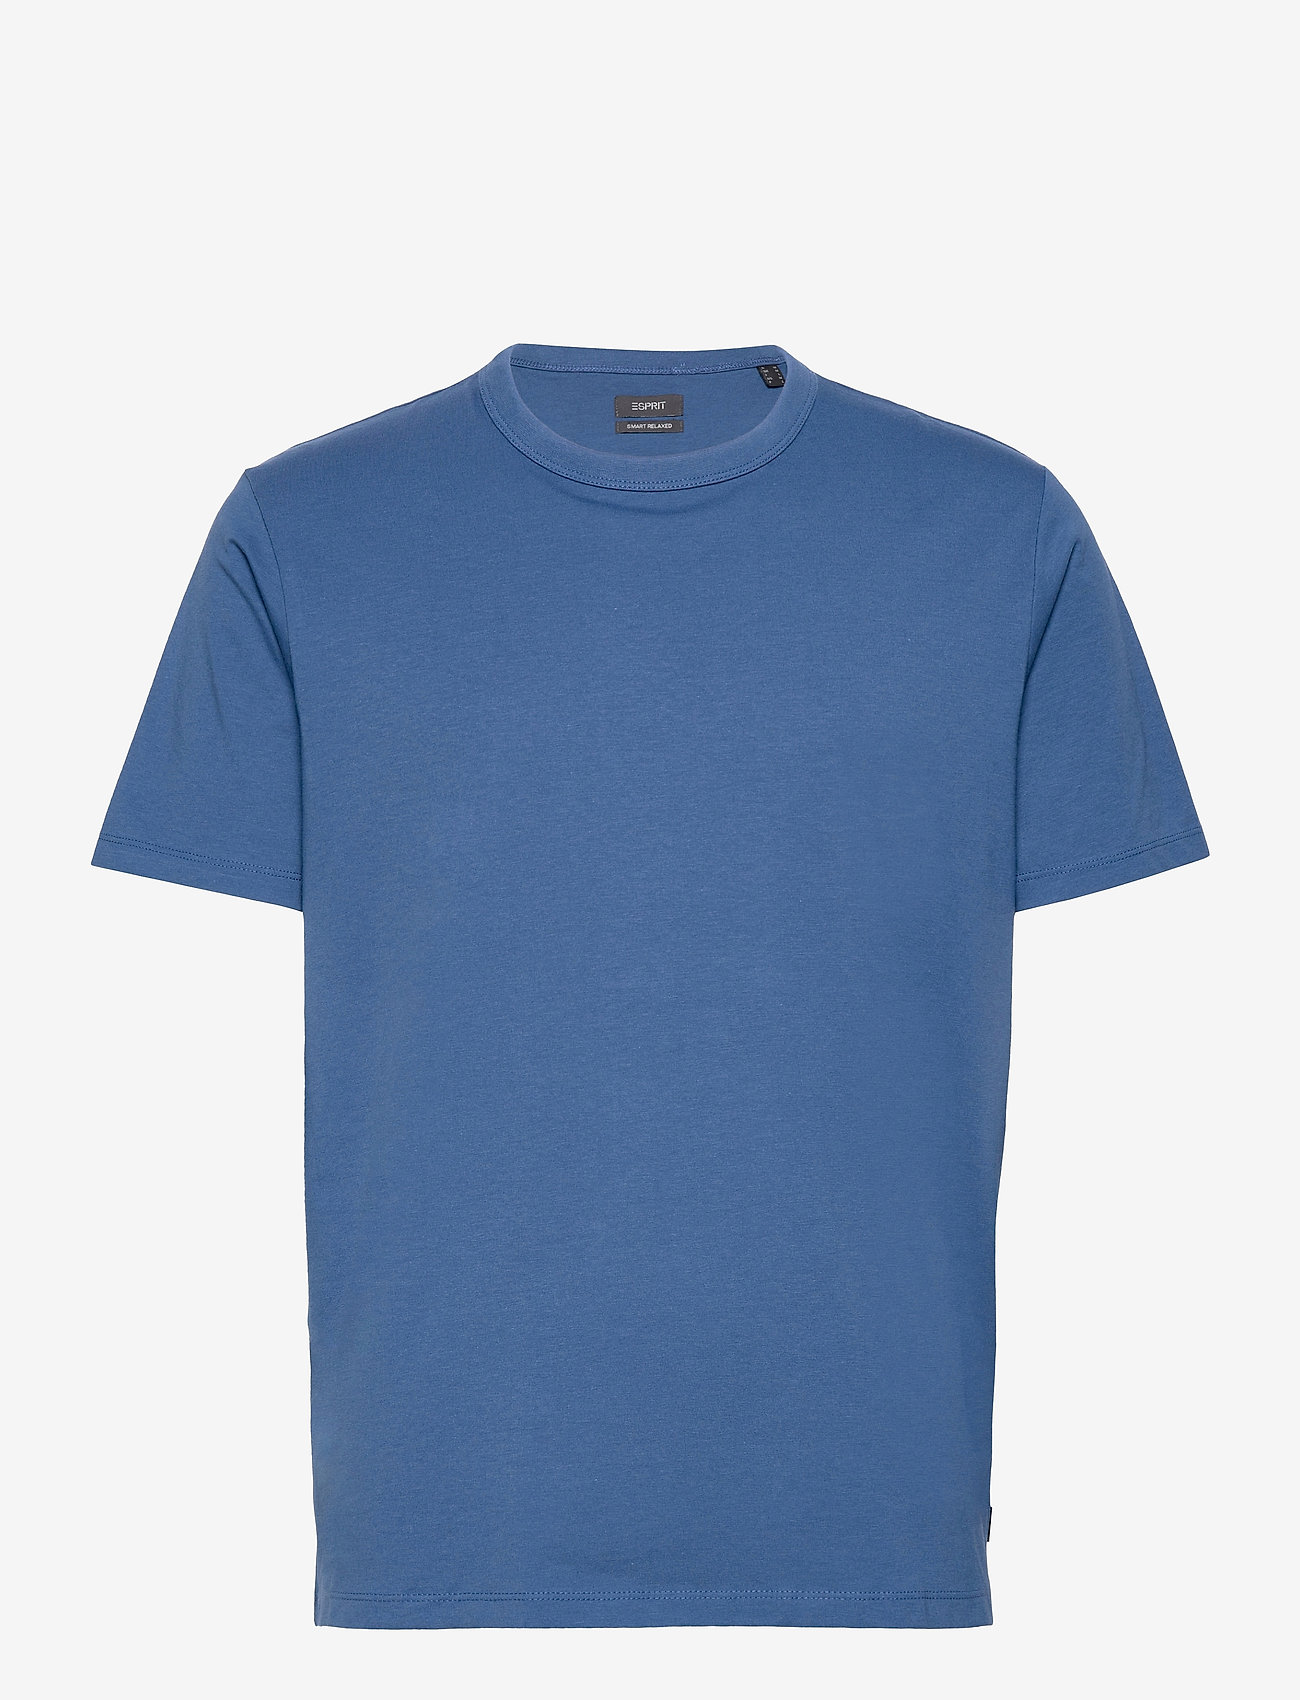 Esprit Collection - T-Shirts - blue lavender - 0